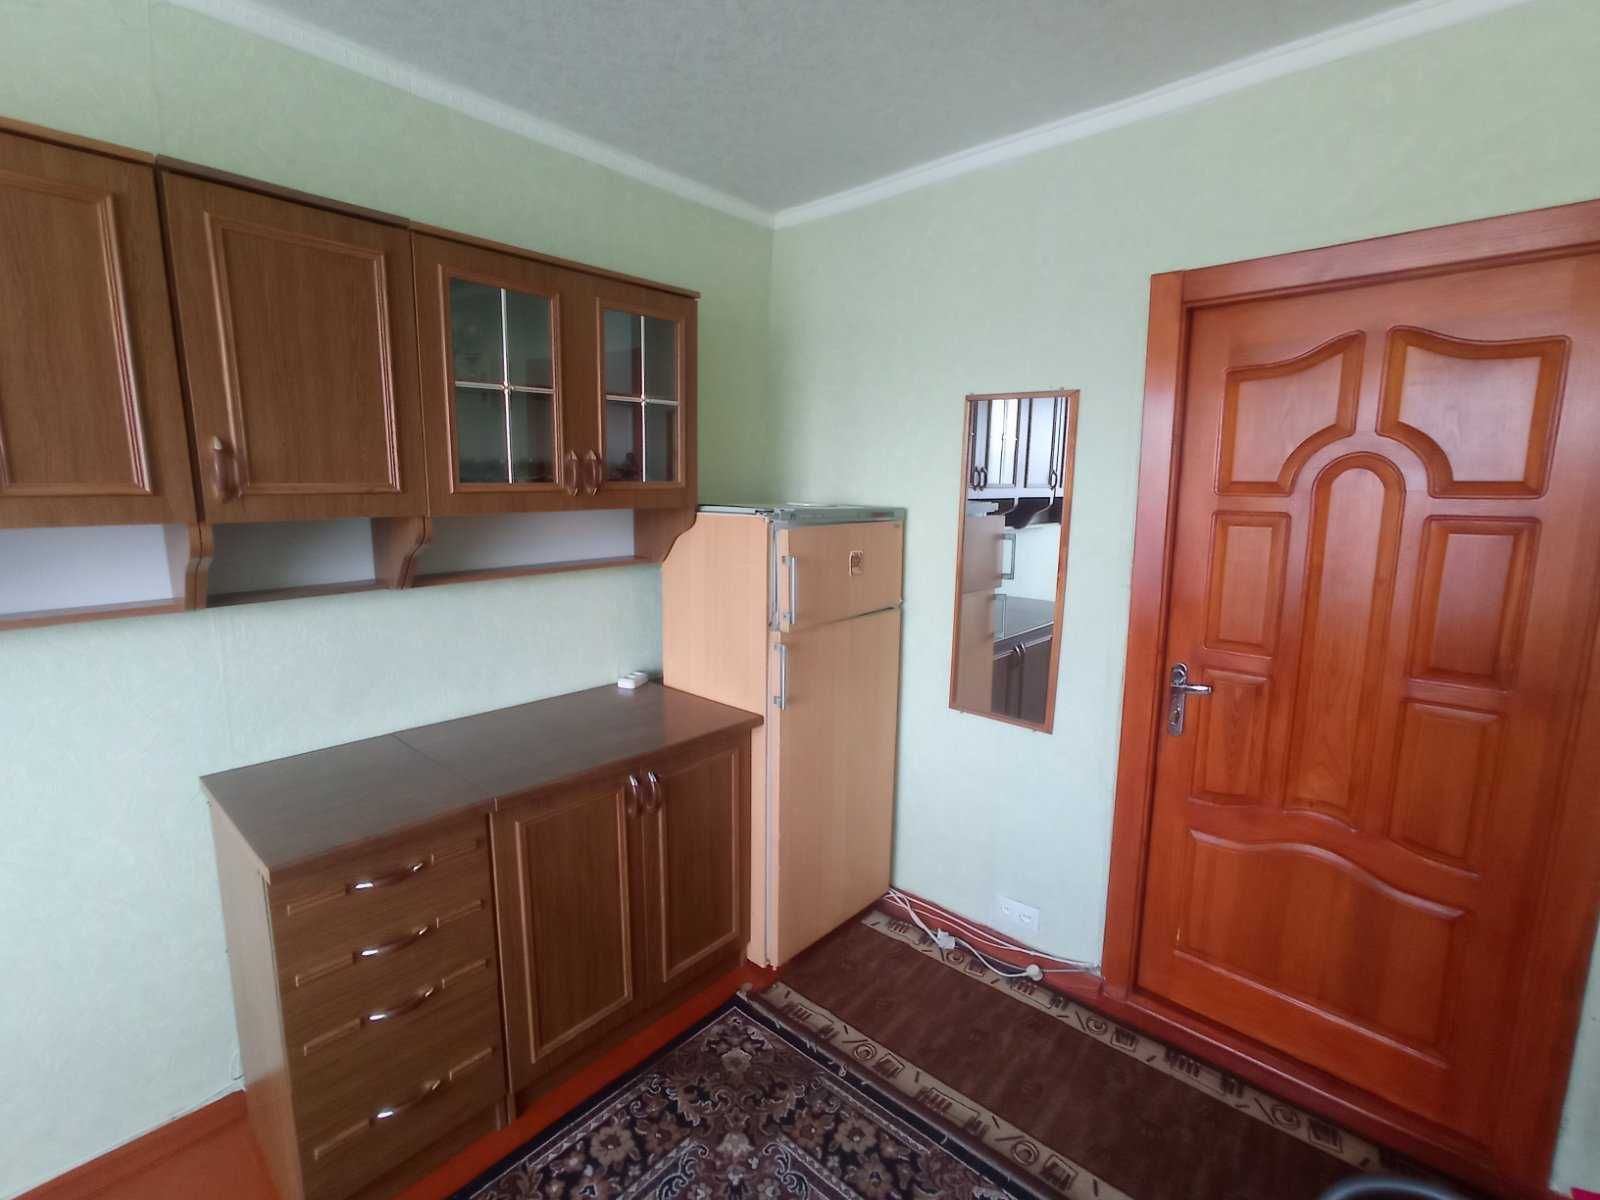 Продам квартиру гостиного типа ул.Селянская, 76 меб,ремонт ц5500 т.д